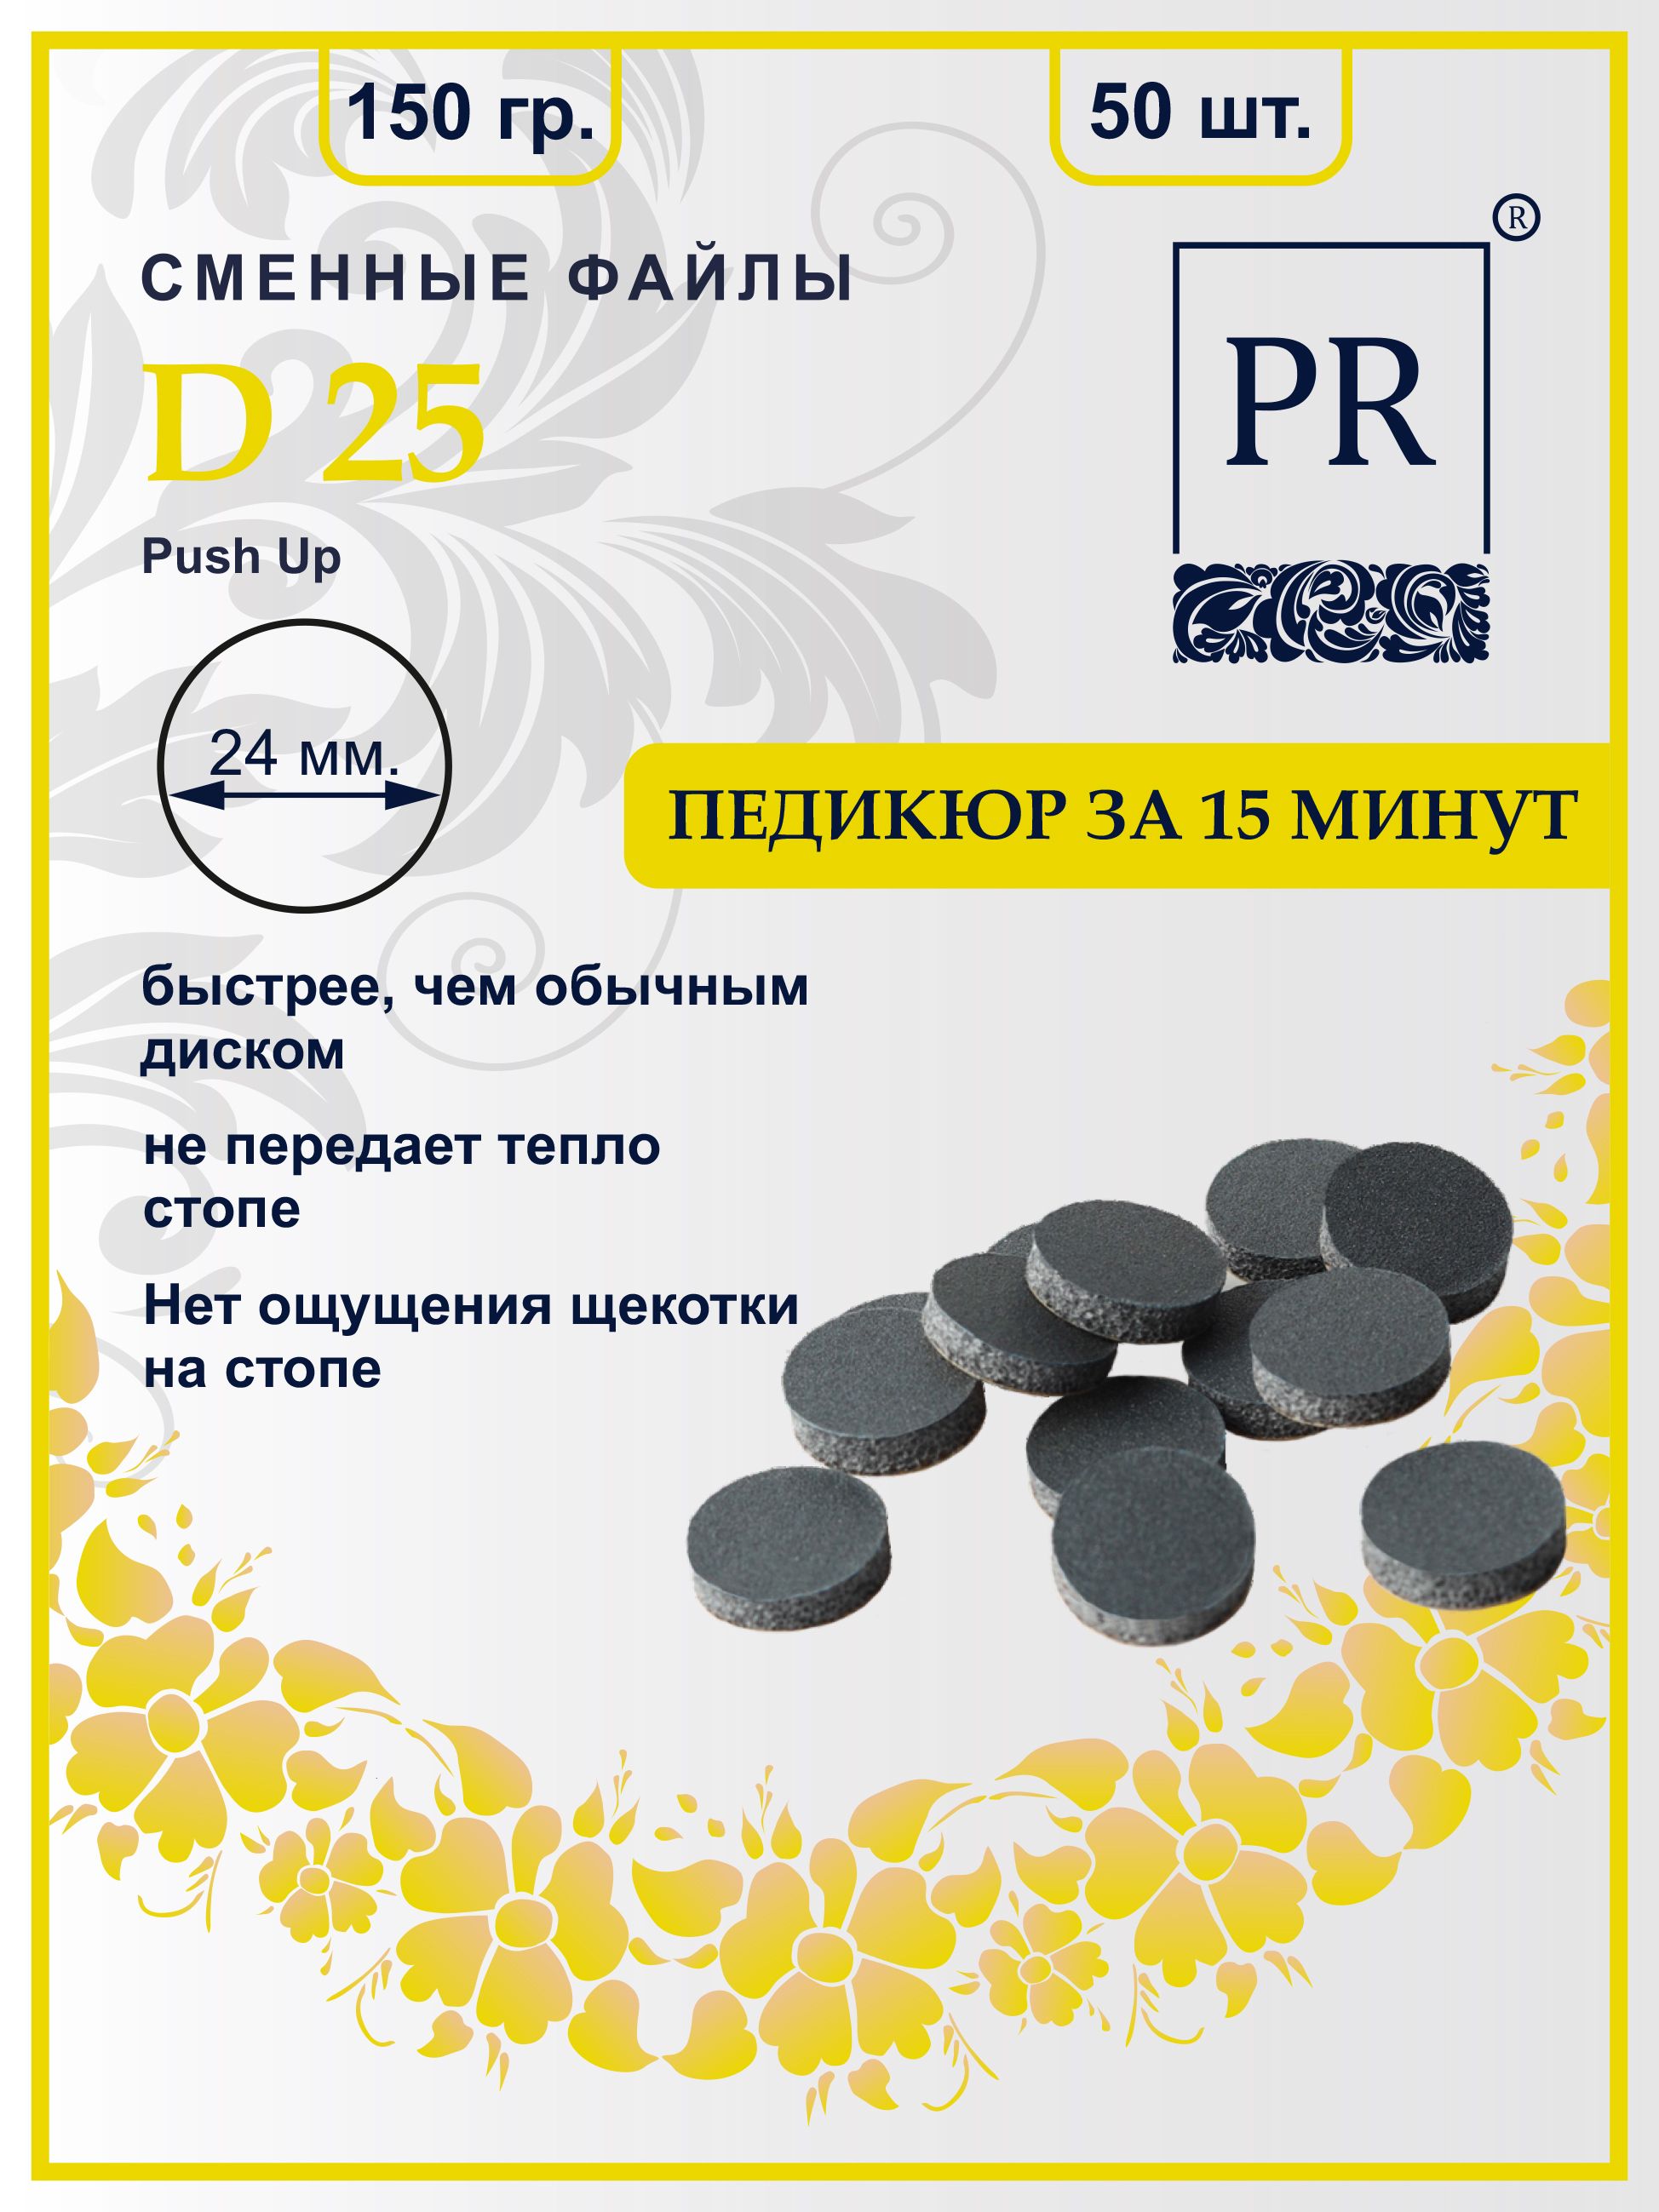 Сменные файлы Pilochki Russia диски Push Up для педикюра для диска L 150 грит 50 штук